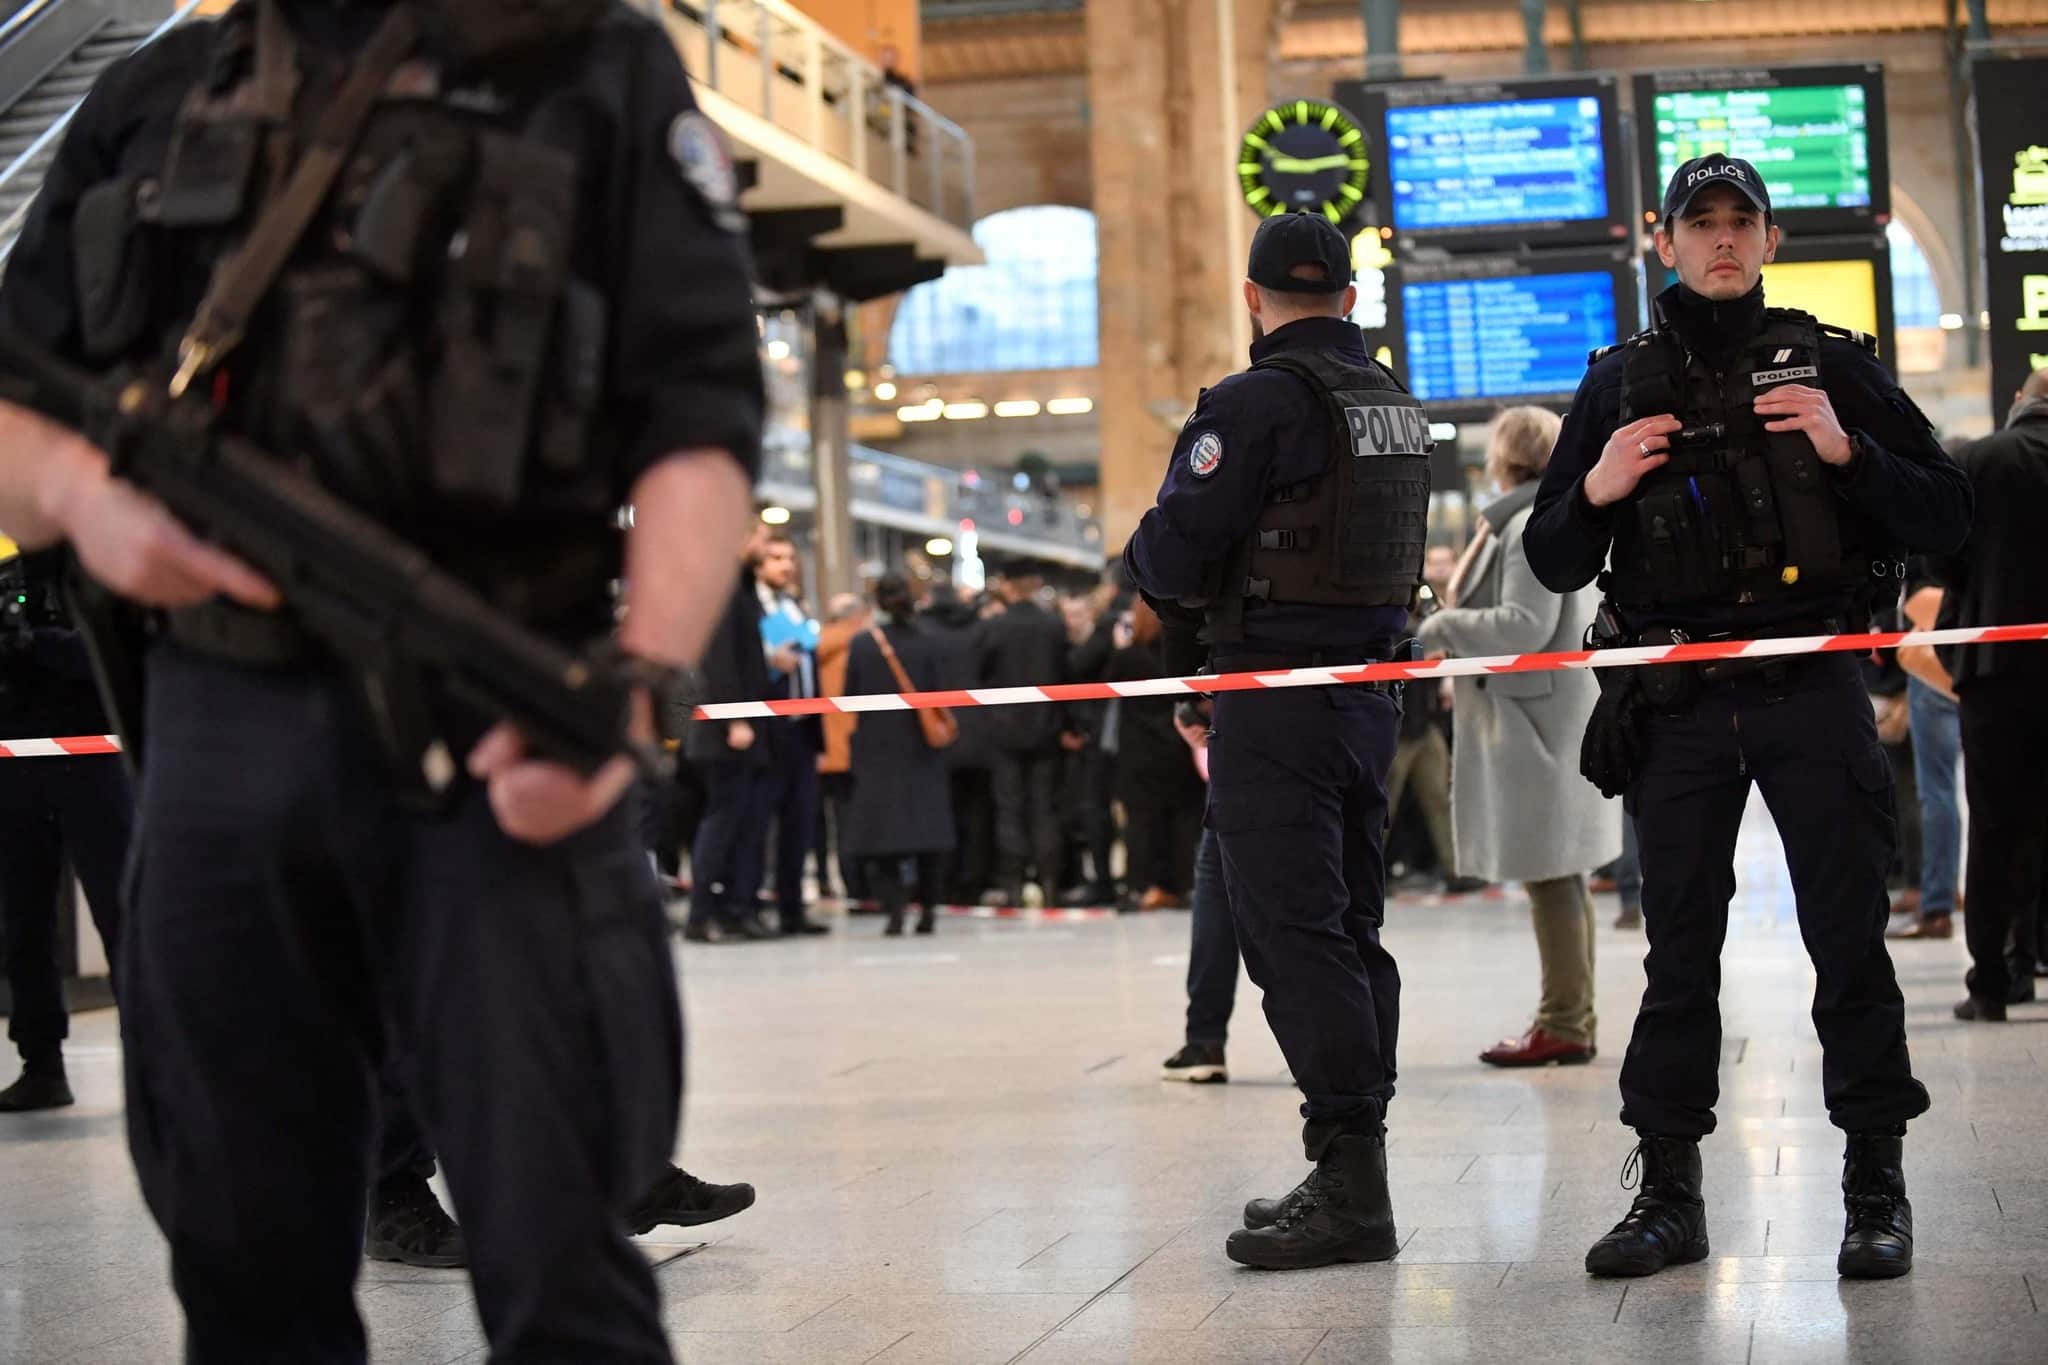 Attimi di terrore a Parigi, diverse persone accoltellate alla stazione Gare du Nord. Un uomo è stato arrestato. Si indaga sul movente dell’attacco